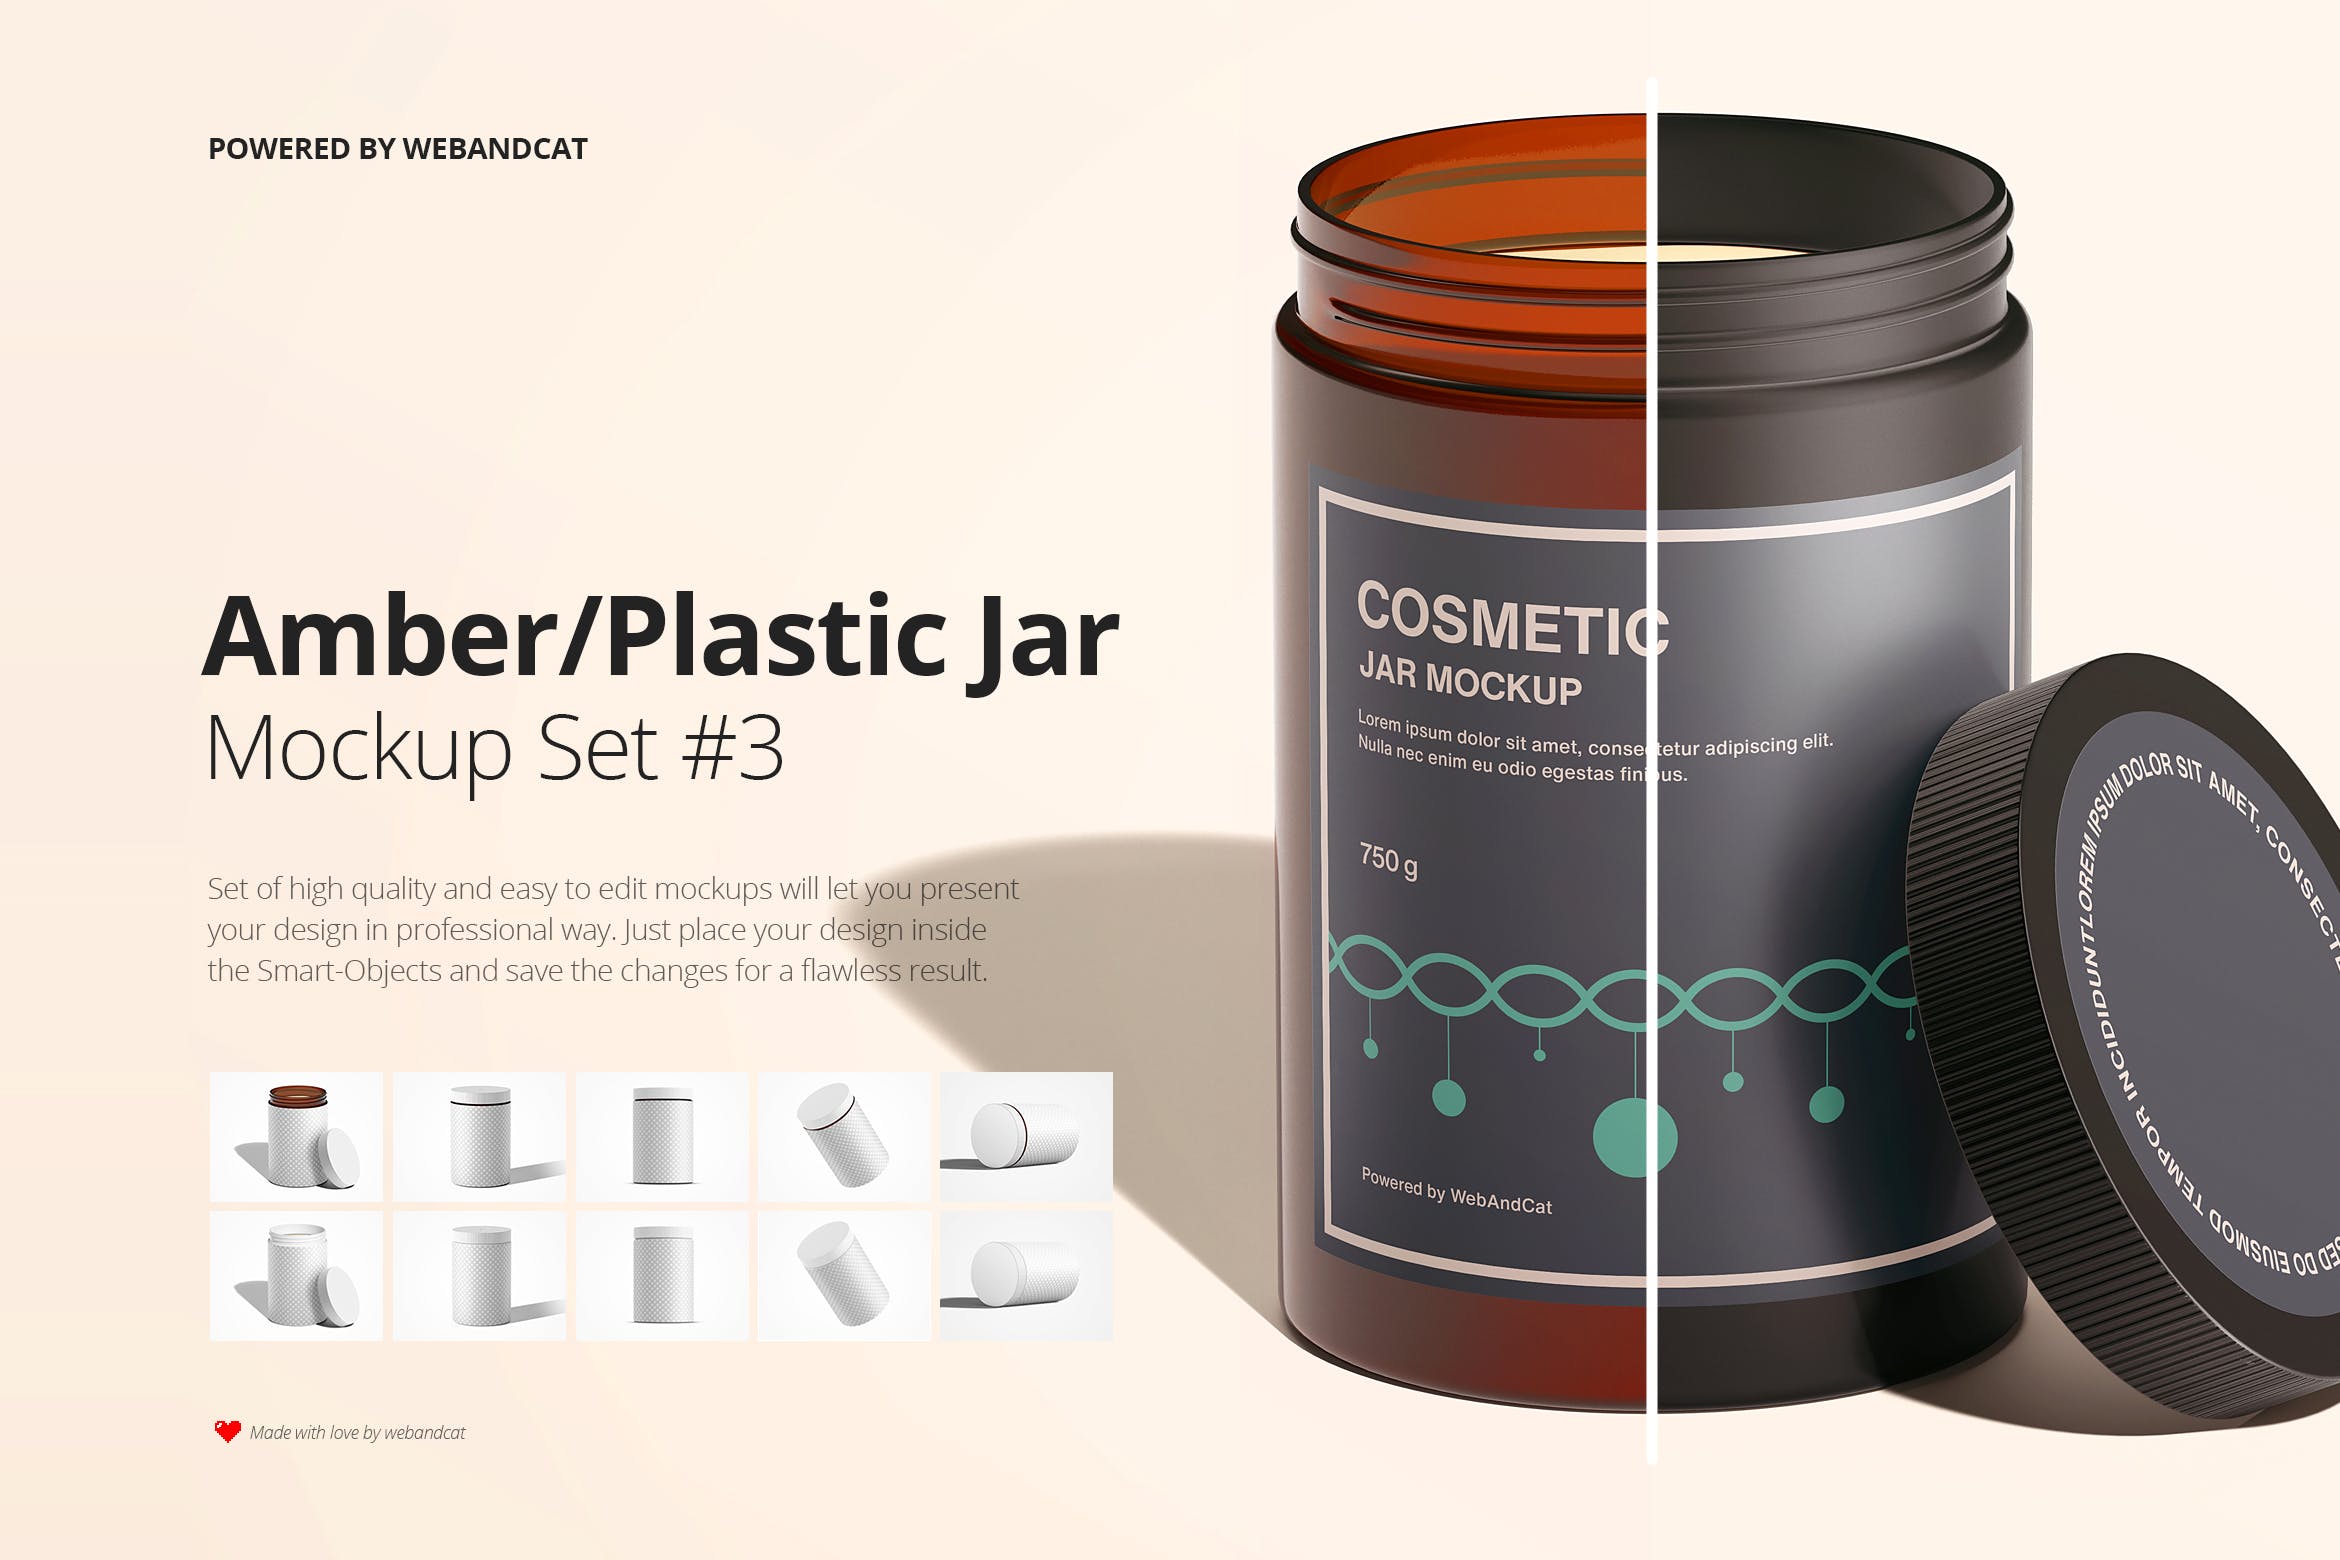 面霜化妆品罐包装设计样机模板集v3Amber / Plastic Jar Mockup Set 3设计素材模板